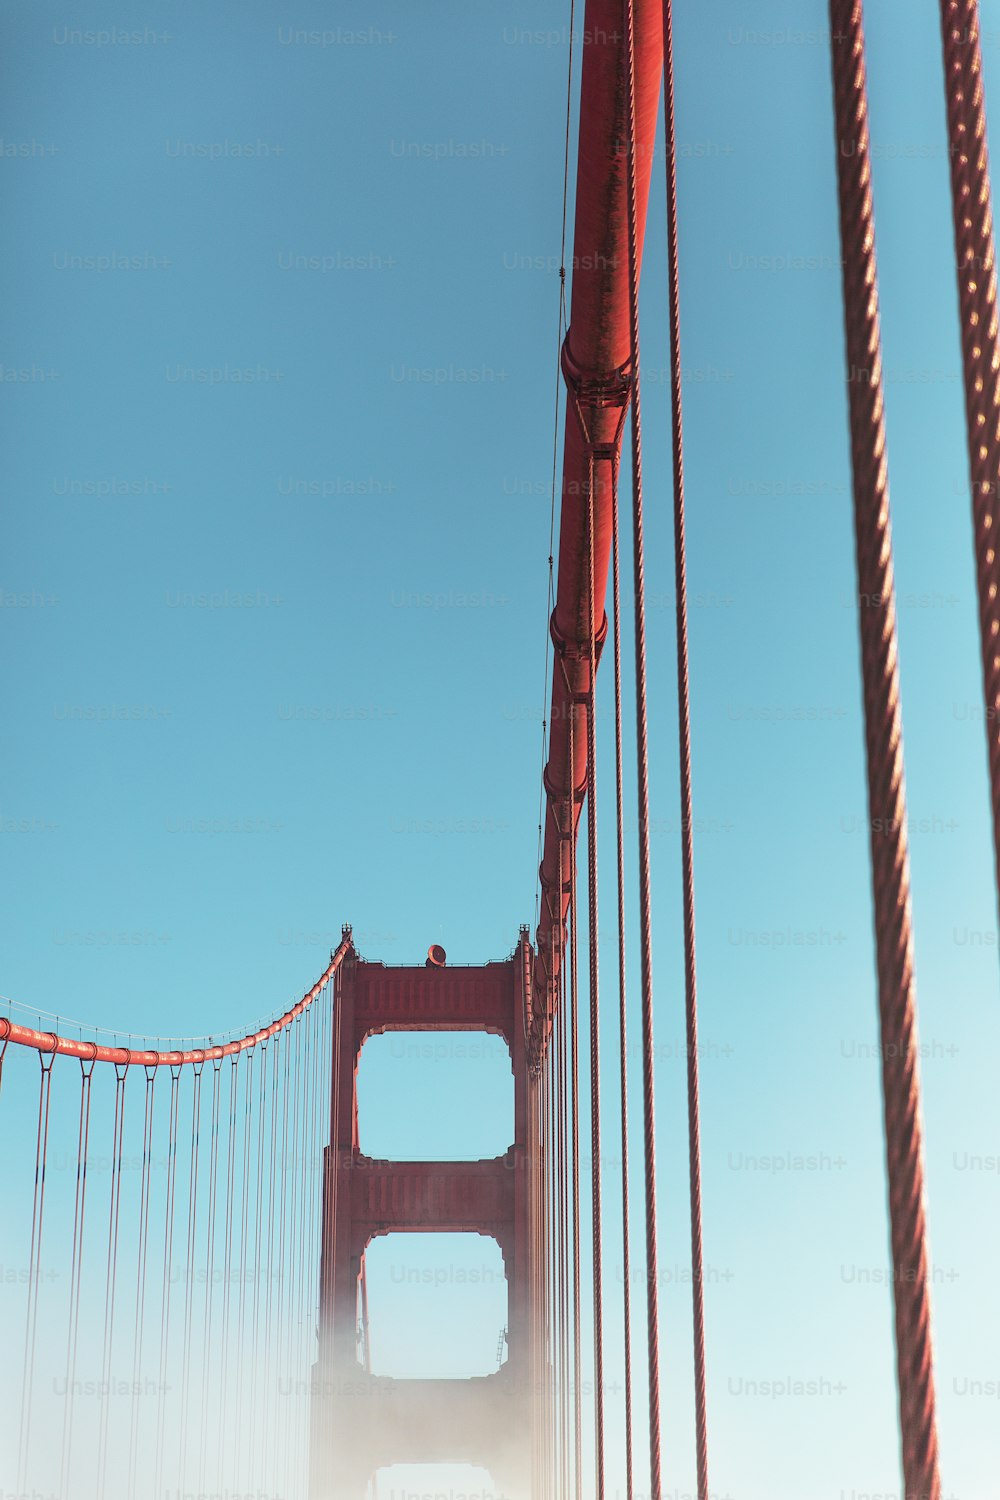 Una vista del puente Golden Gate desde abajo